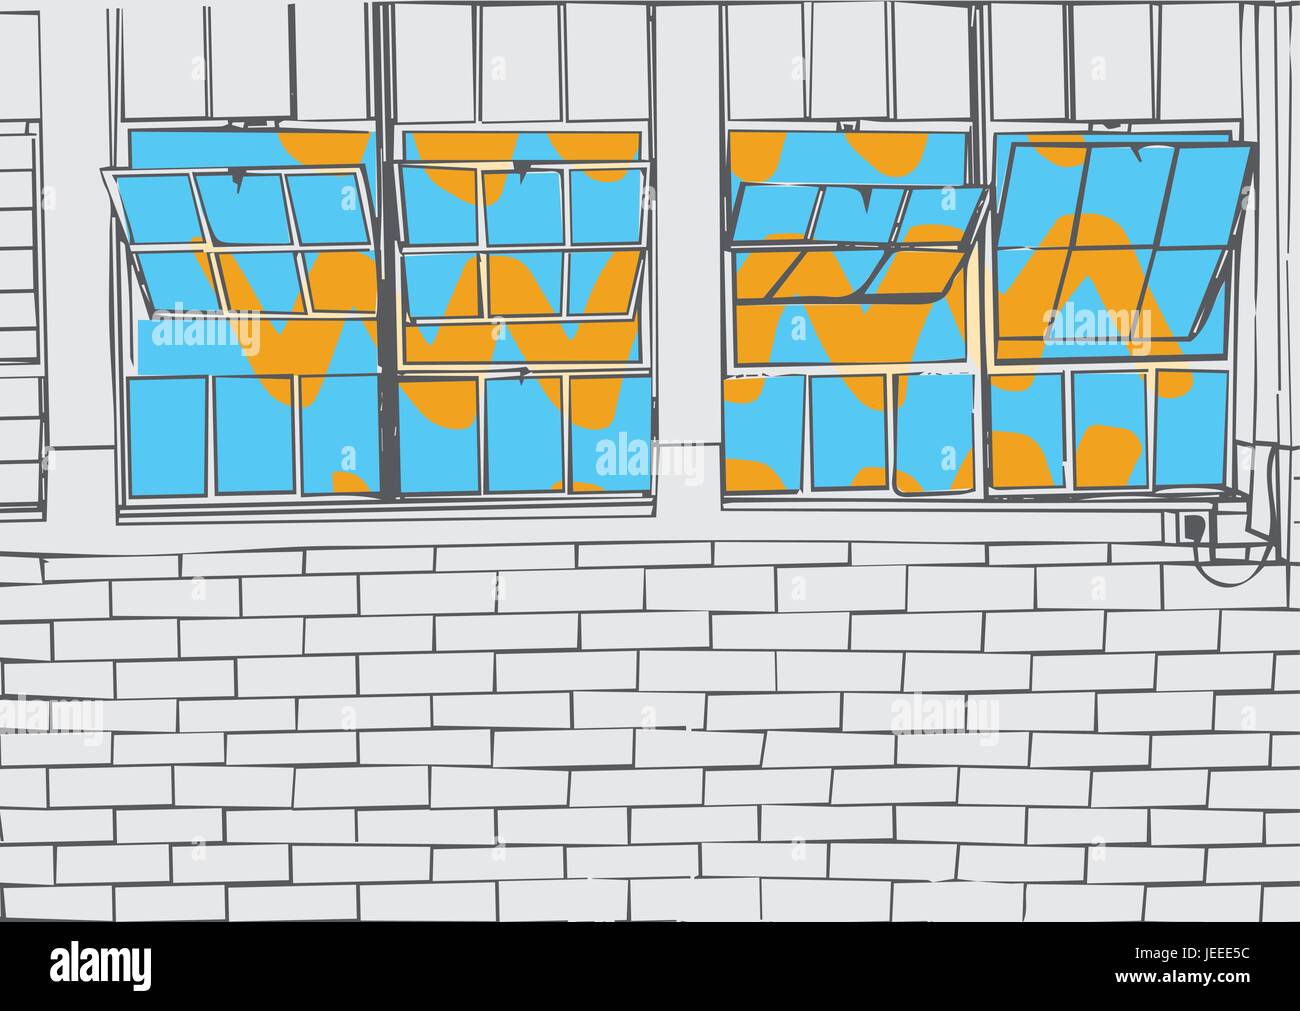 Mur de brique et les fenêtres ouvertes Illustration de Vecteur